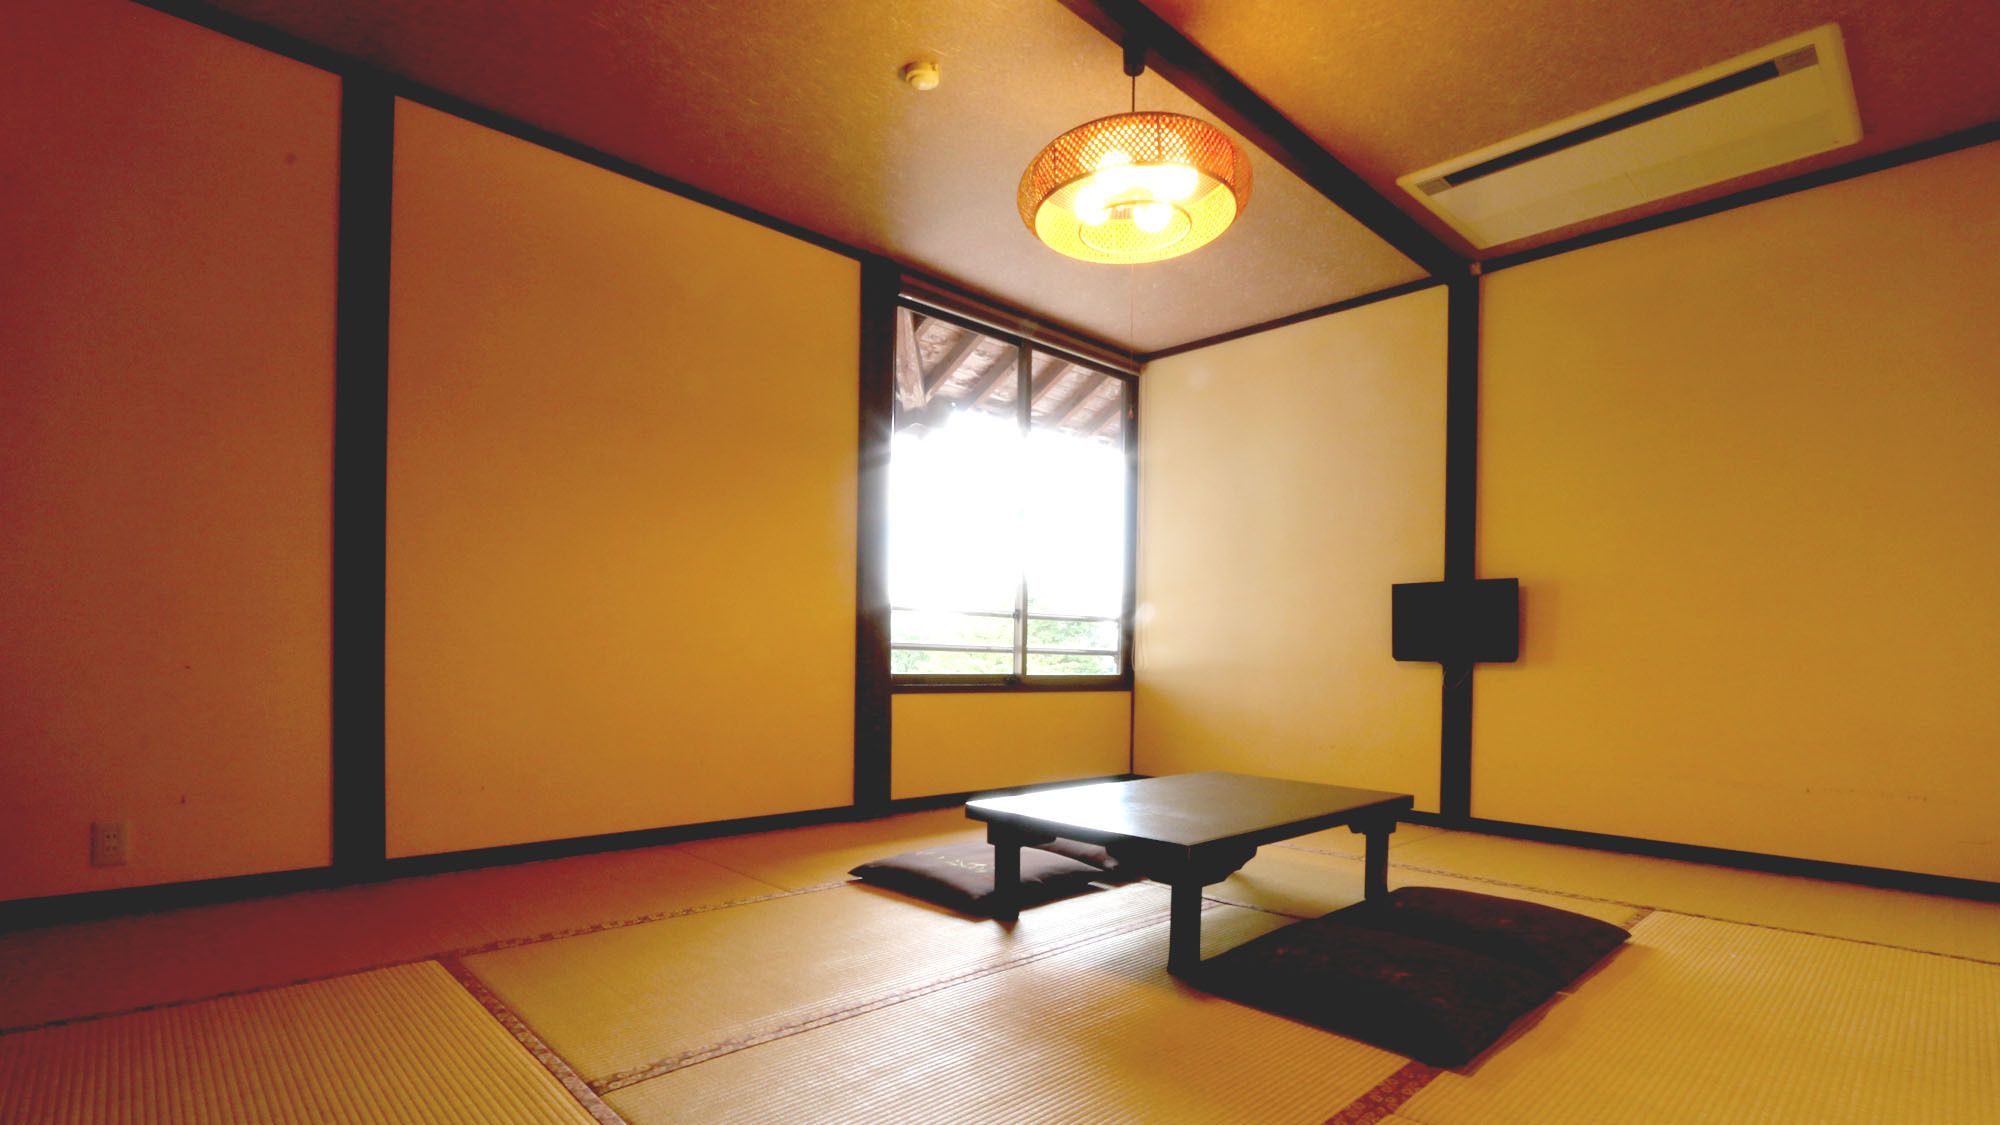 【和室８畳】シンプルで少しノスタルジックな和の空間です。